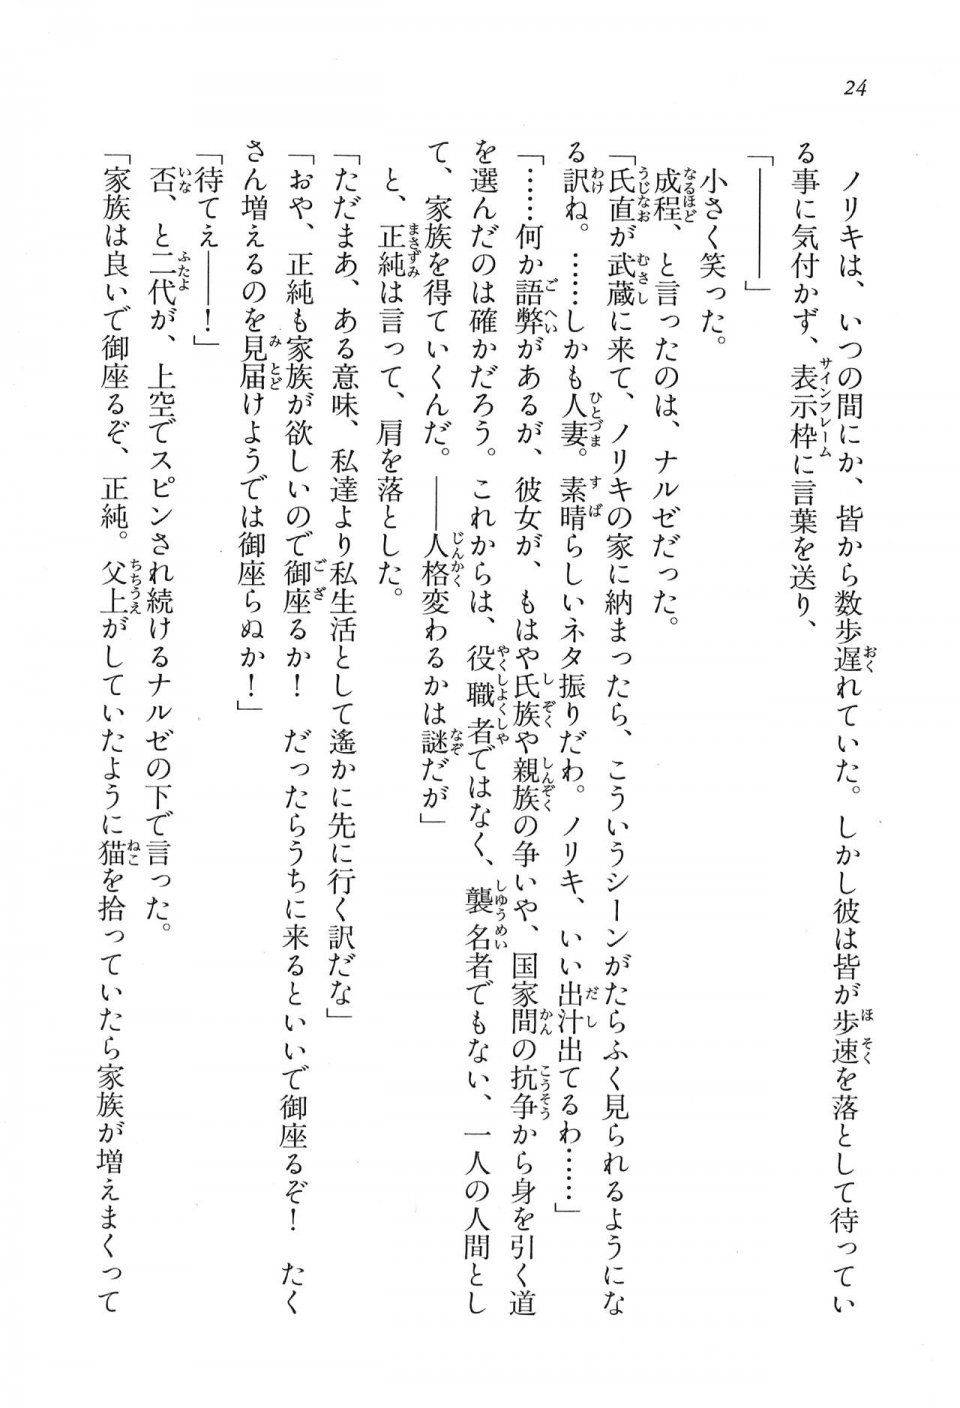 Kyoukai Senjou no Horizon LN Vol 16(7A) - Photo #24